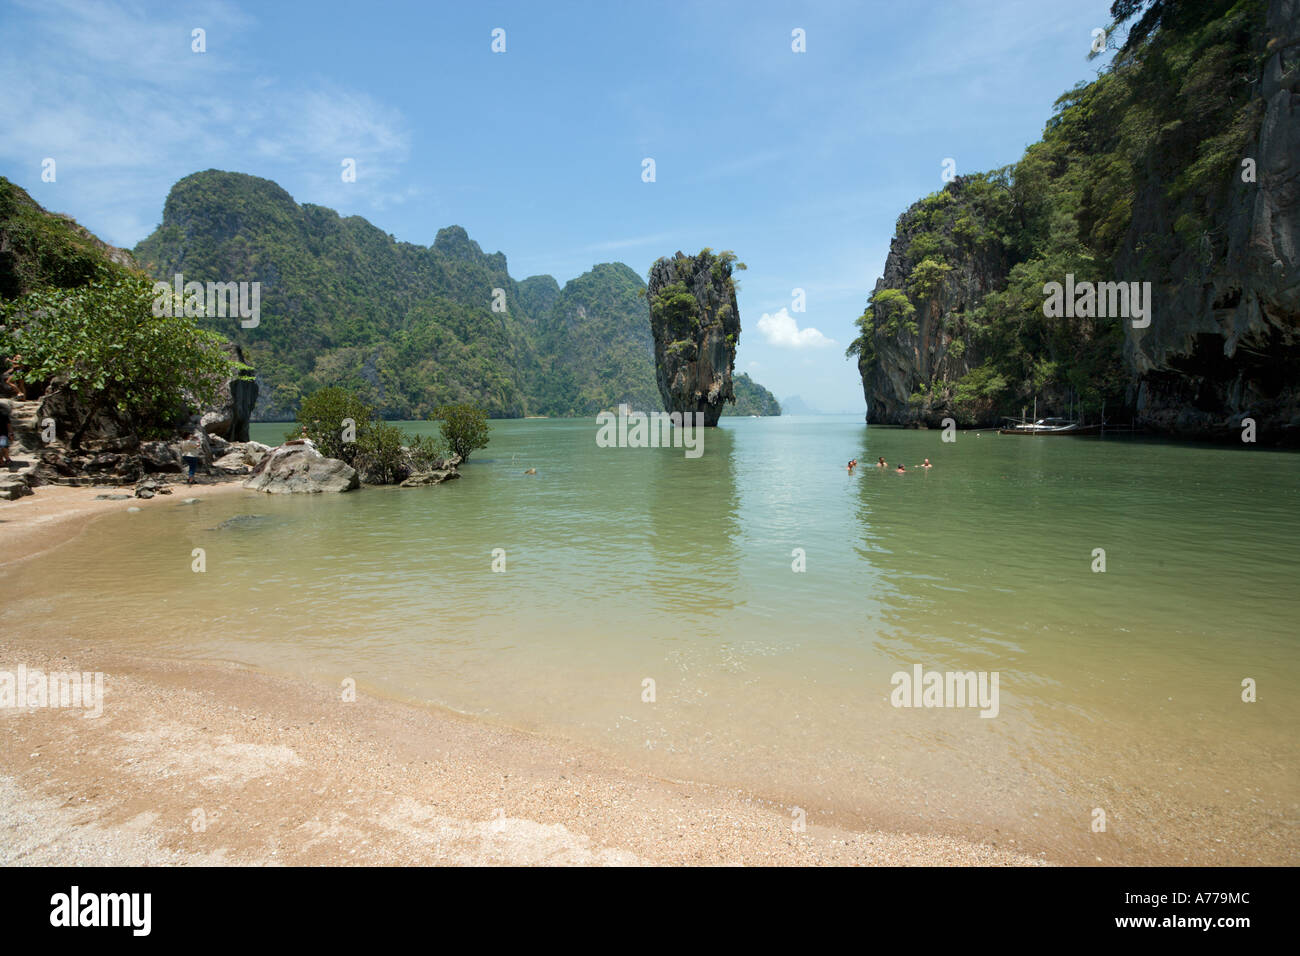 The beach and rocky outcrop of Ko Tapu on James Bond Island, Ao Phang Nga National Park, Phang Nga, Thailand Stock Photo